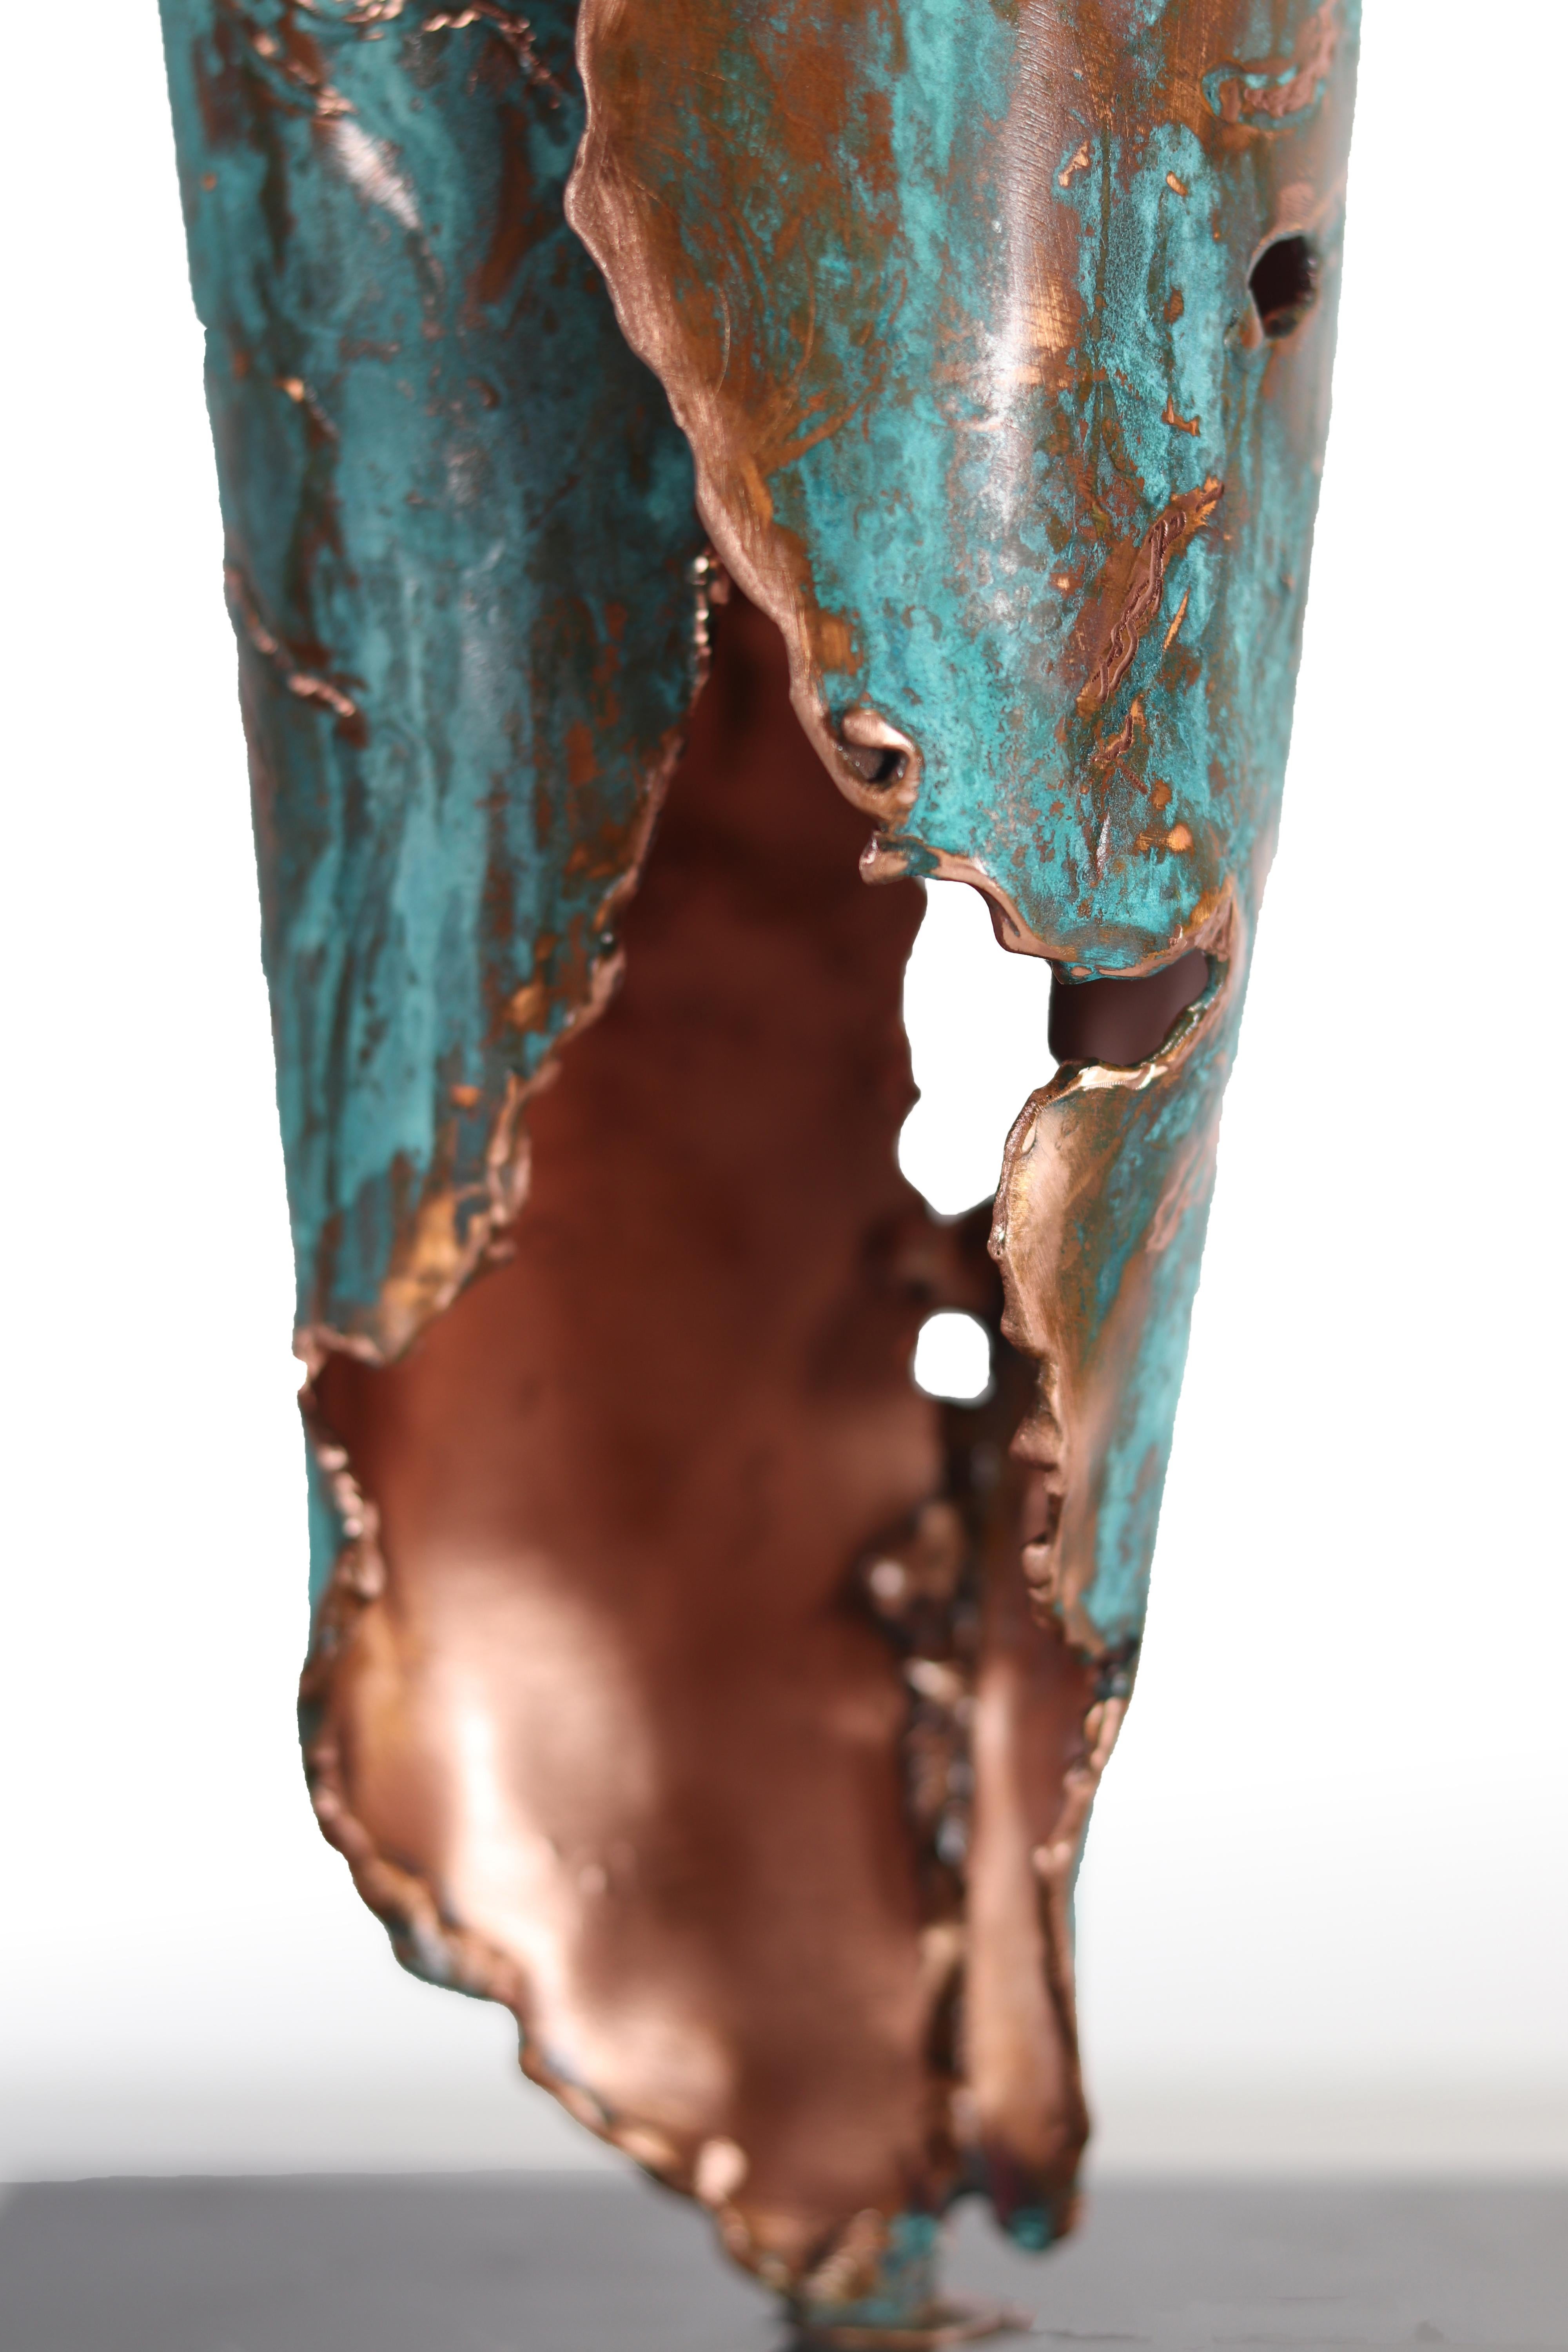 Handgefertigte Vase aus Kupfer von Samuel Costantini
Vollständig von der Künstlerin handgefertigt
Ausgabe 9 + 1 AP
Maße: Durchmesser 140 mm, Höhe 400 mm.
Durchmesser 5,51 Zoll Höhe 15,748 Zoll

Ein kleiner Spross beginnt, das Licht unter einem